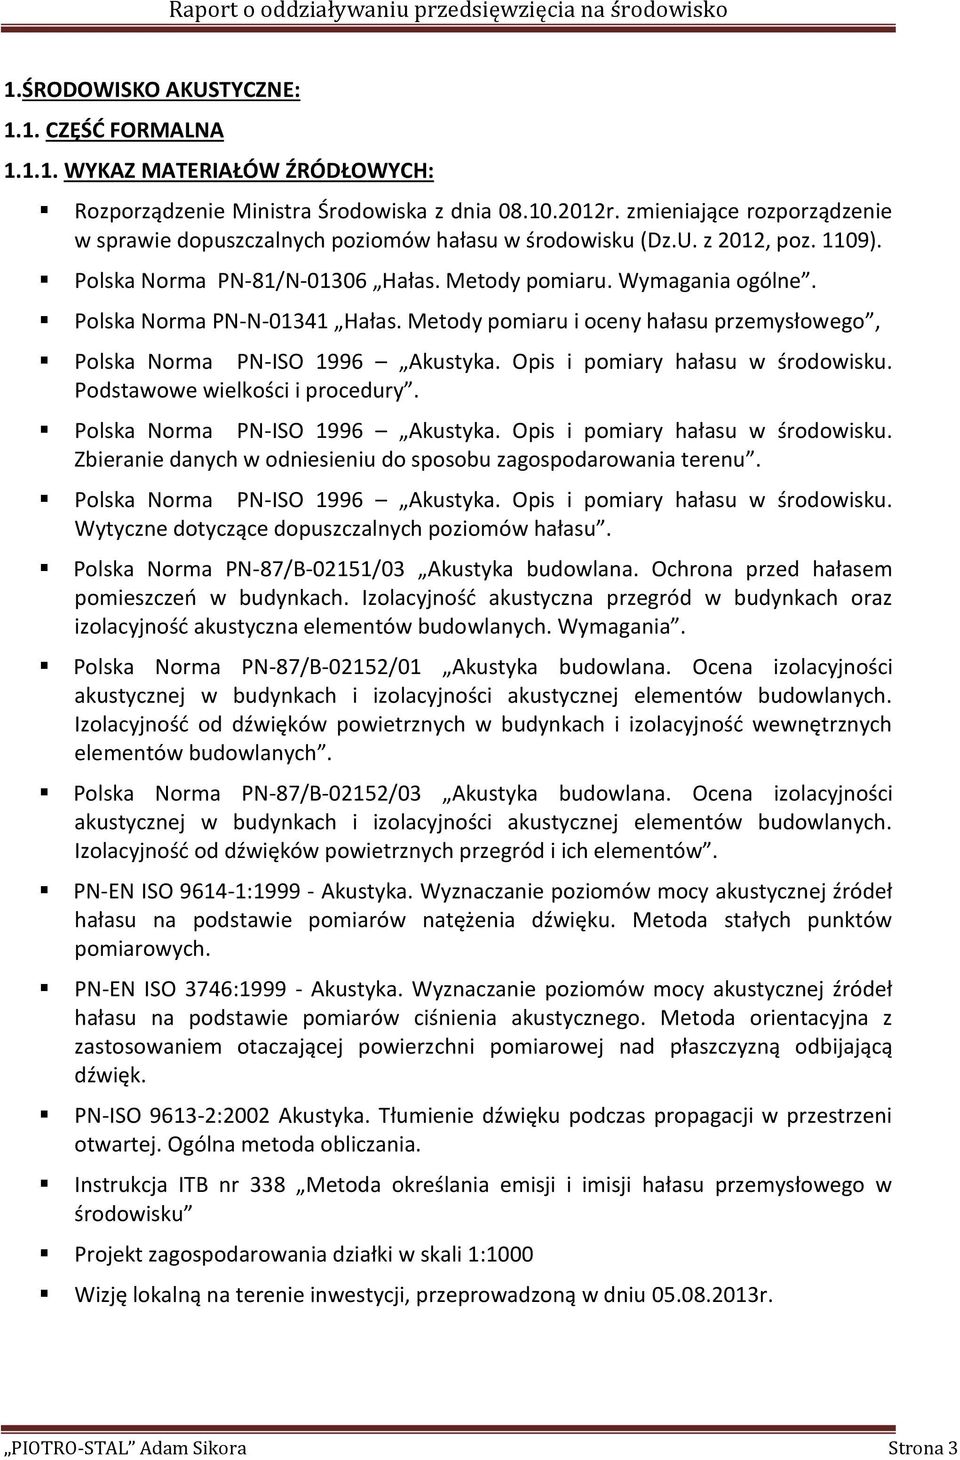 Polska Norma PN-N-01341 Hałas. Metody pomiaru i oceny hałasu przemysłowego, Polska Norma PN-ISO 1996 Akustyka. Opis i pomiary hałasu w środowisku. Podstawowe wielkości i procedury.